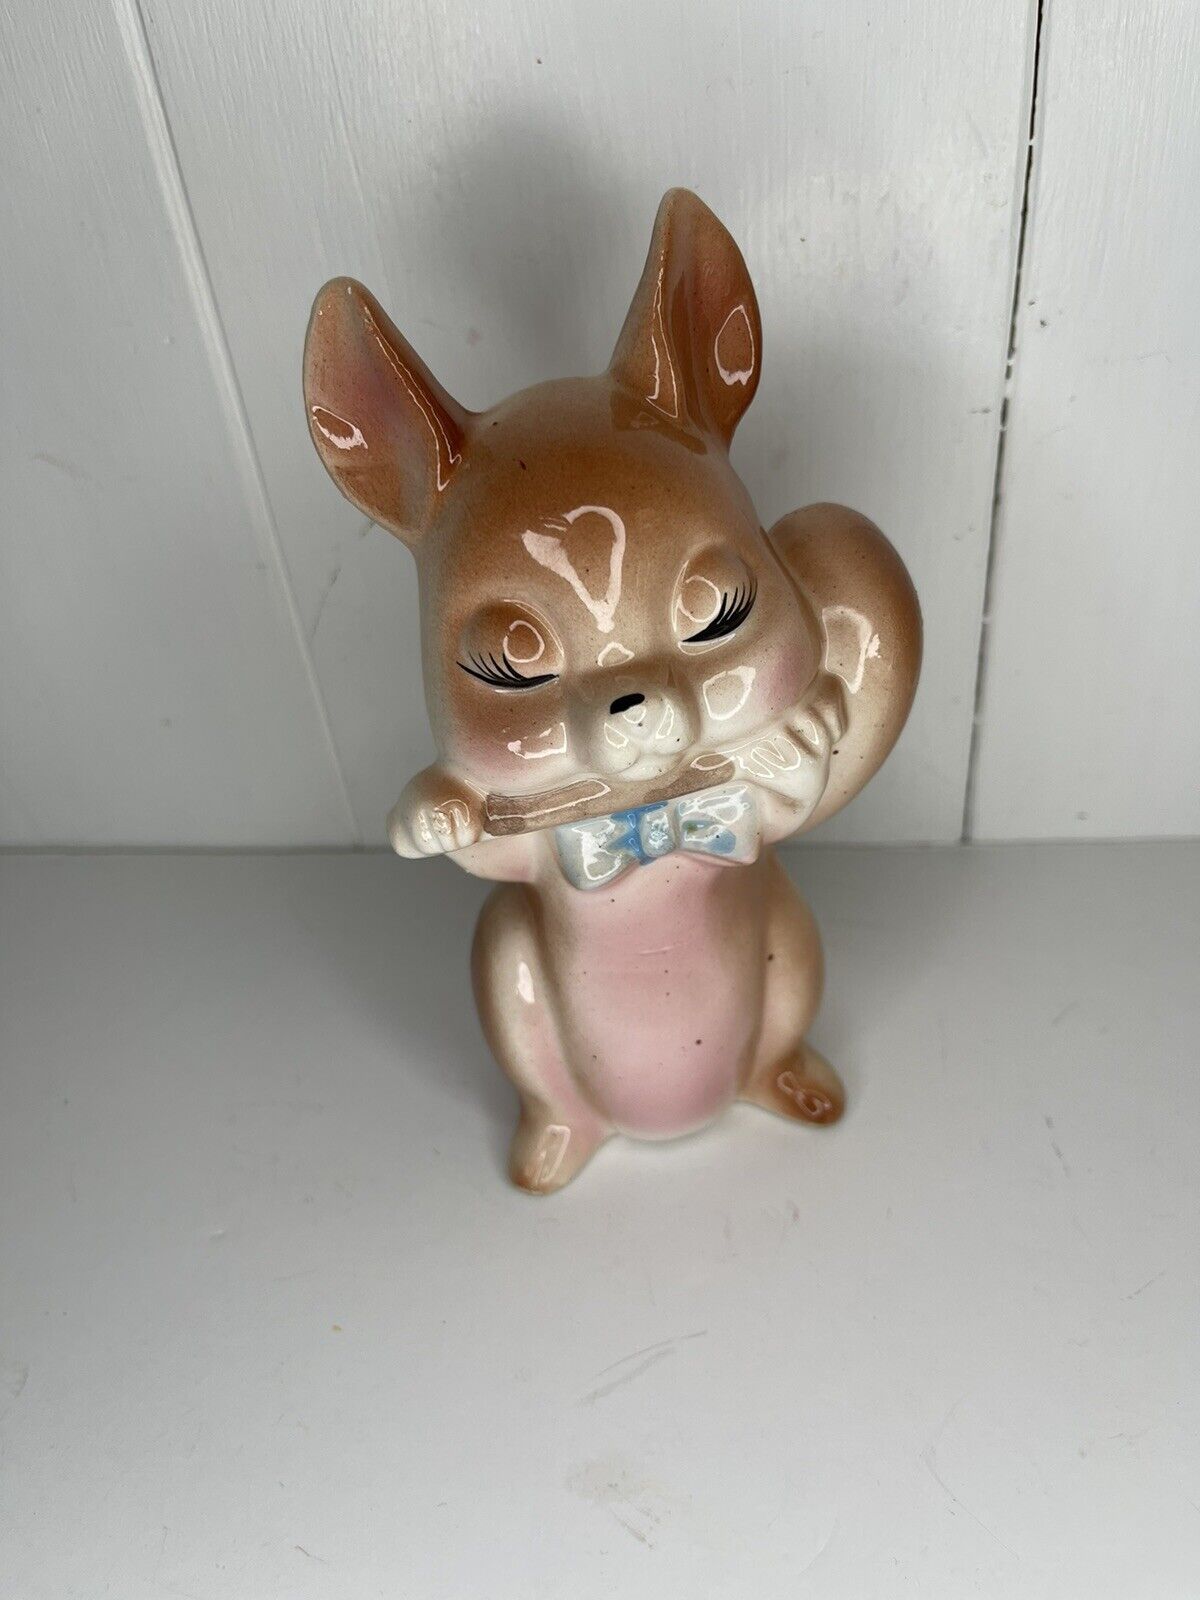 Vintage Porcelain Ceramic Rabbit Figurine Playing Instrument Flute Japan 5